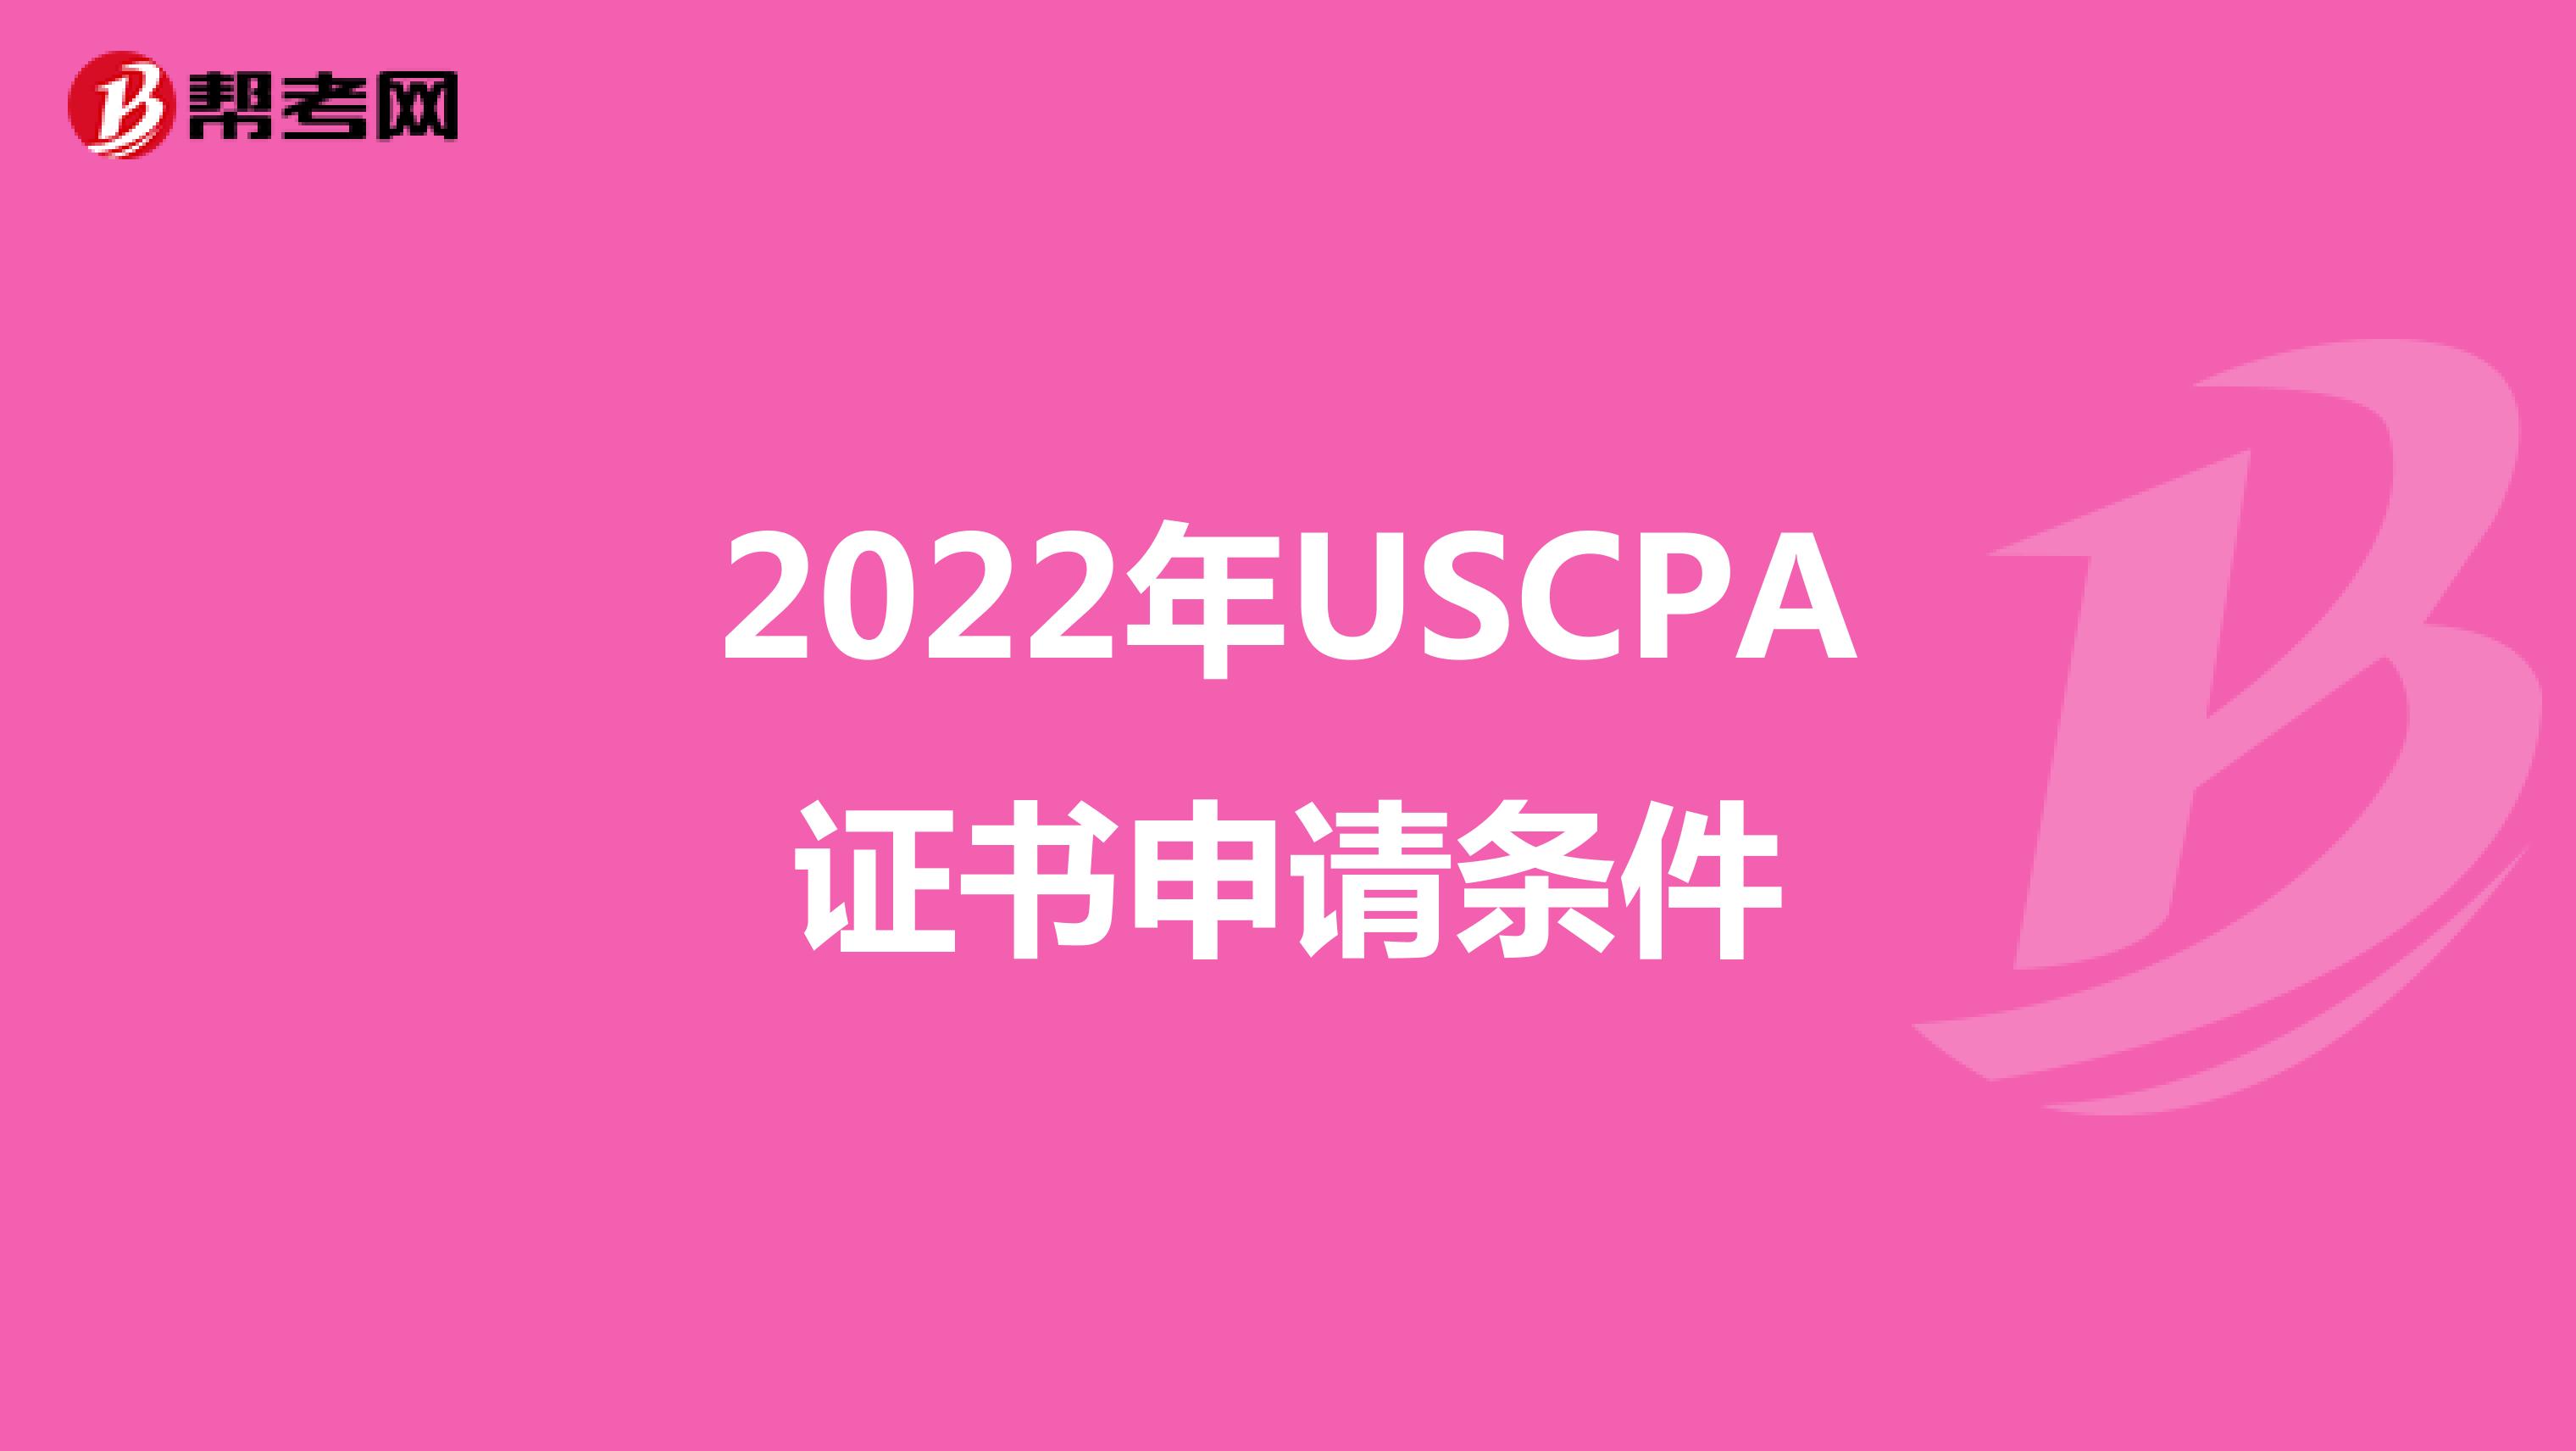 2022年USCPA证书申请条件